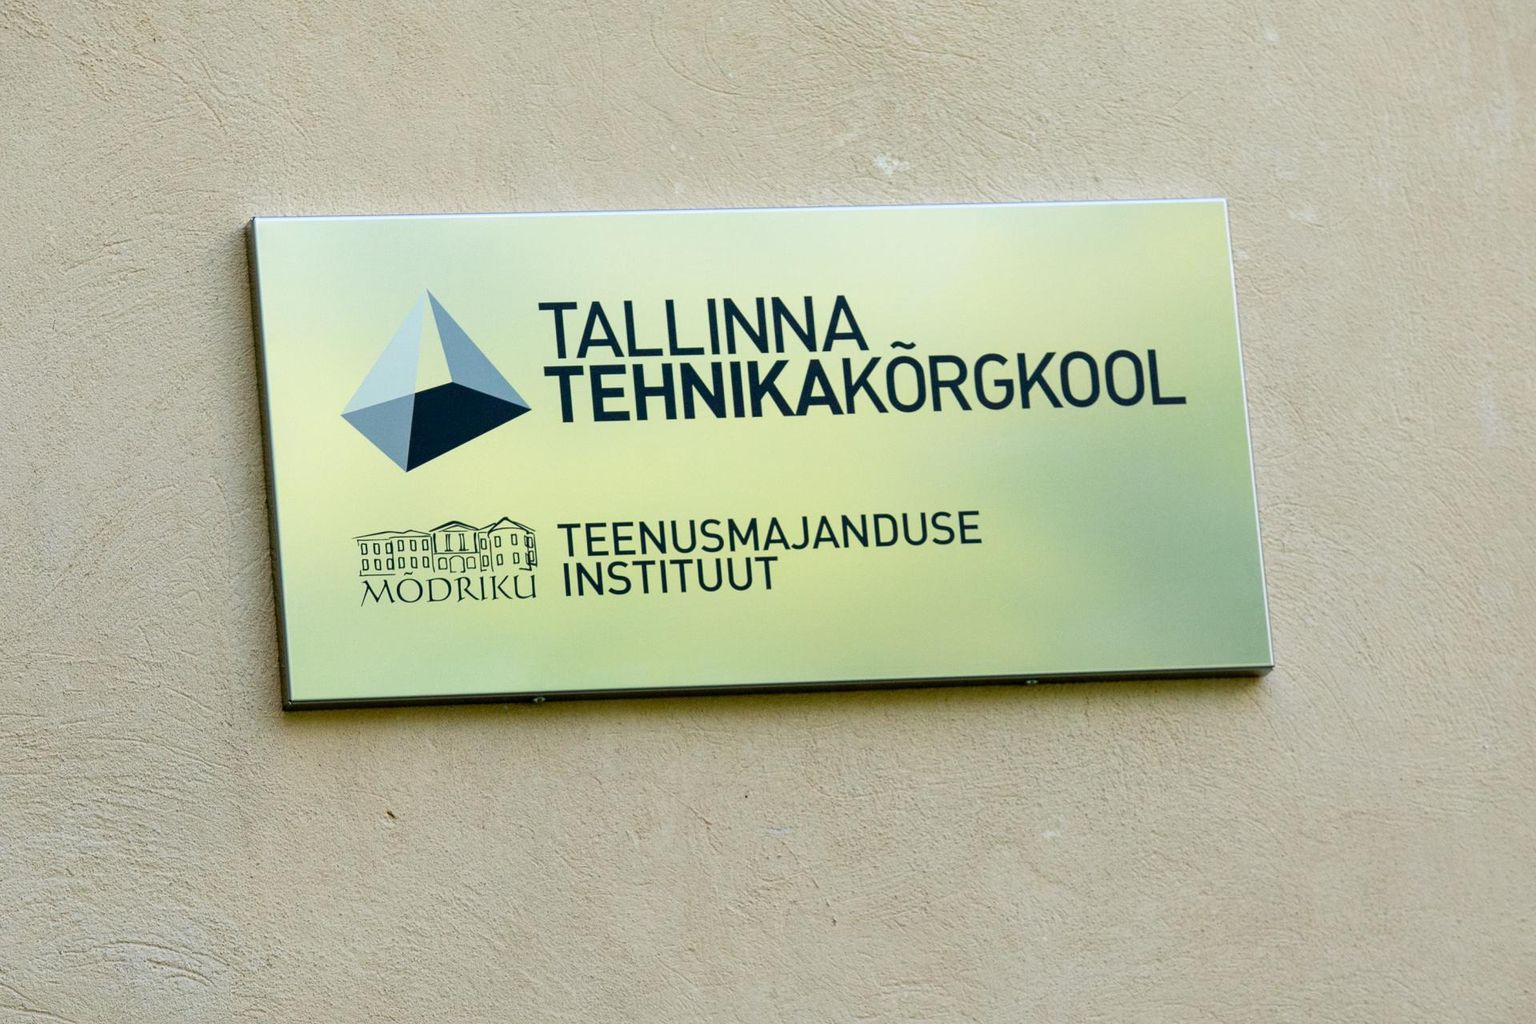 Mõdrikul asuvas Tallinna tehnikakõrgkooli teenusmajanduse instituudis saab lasta end tasuta koolitada.